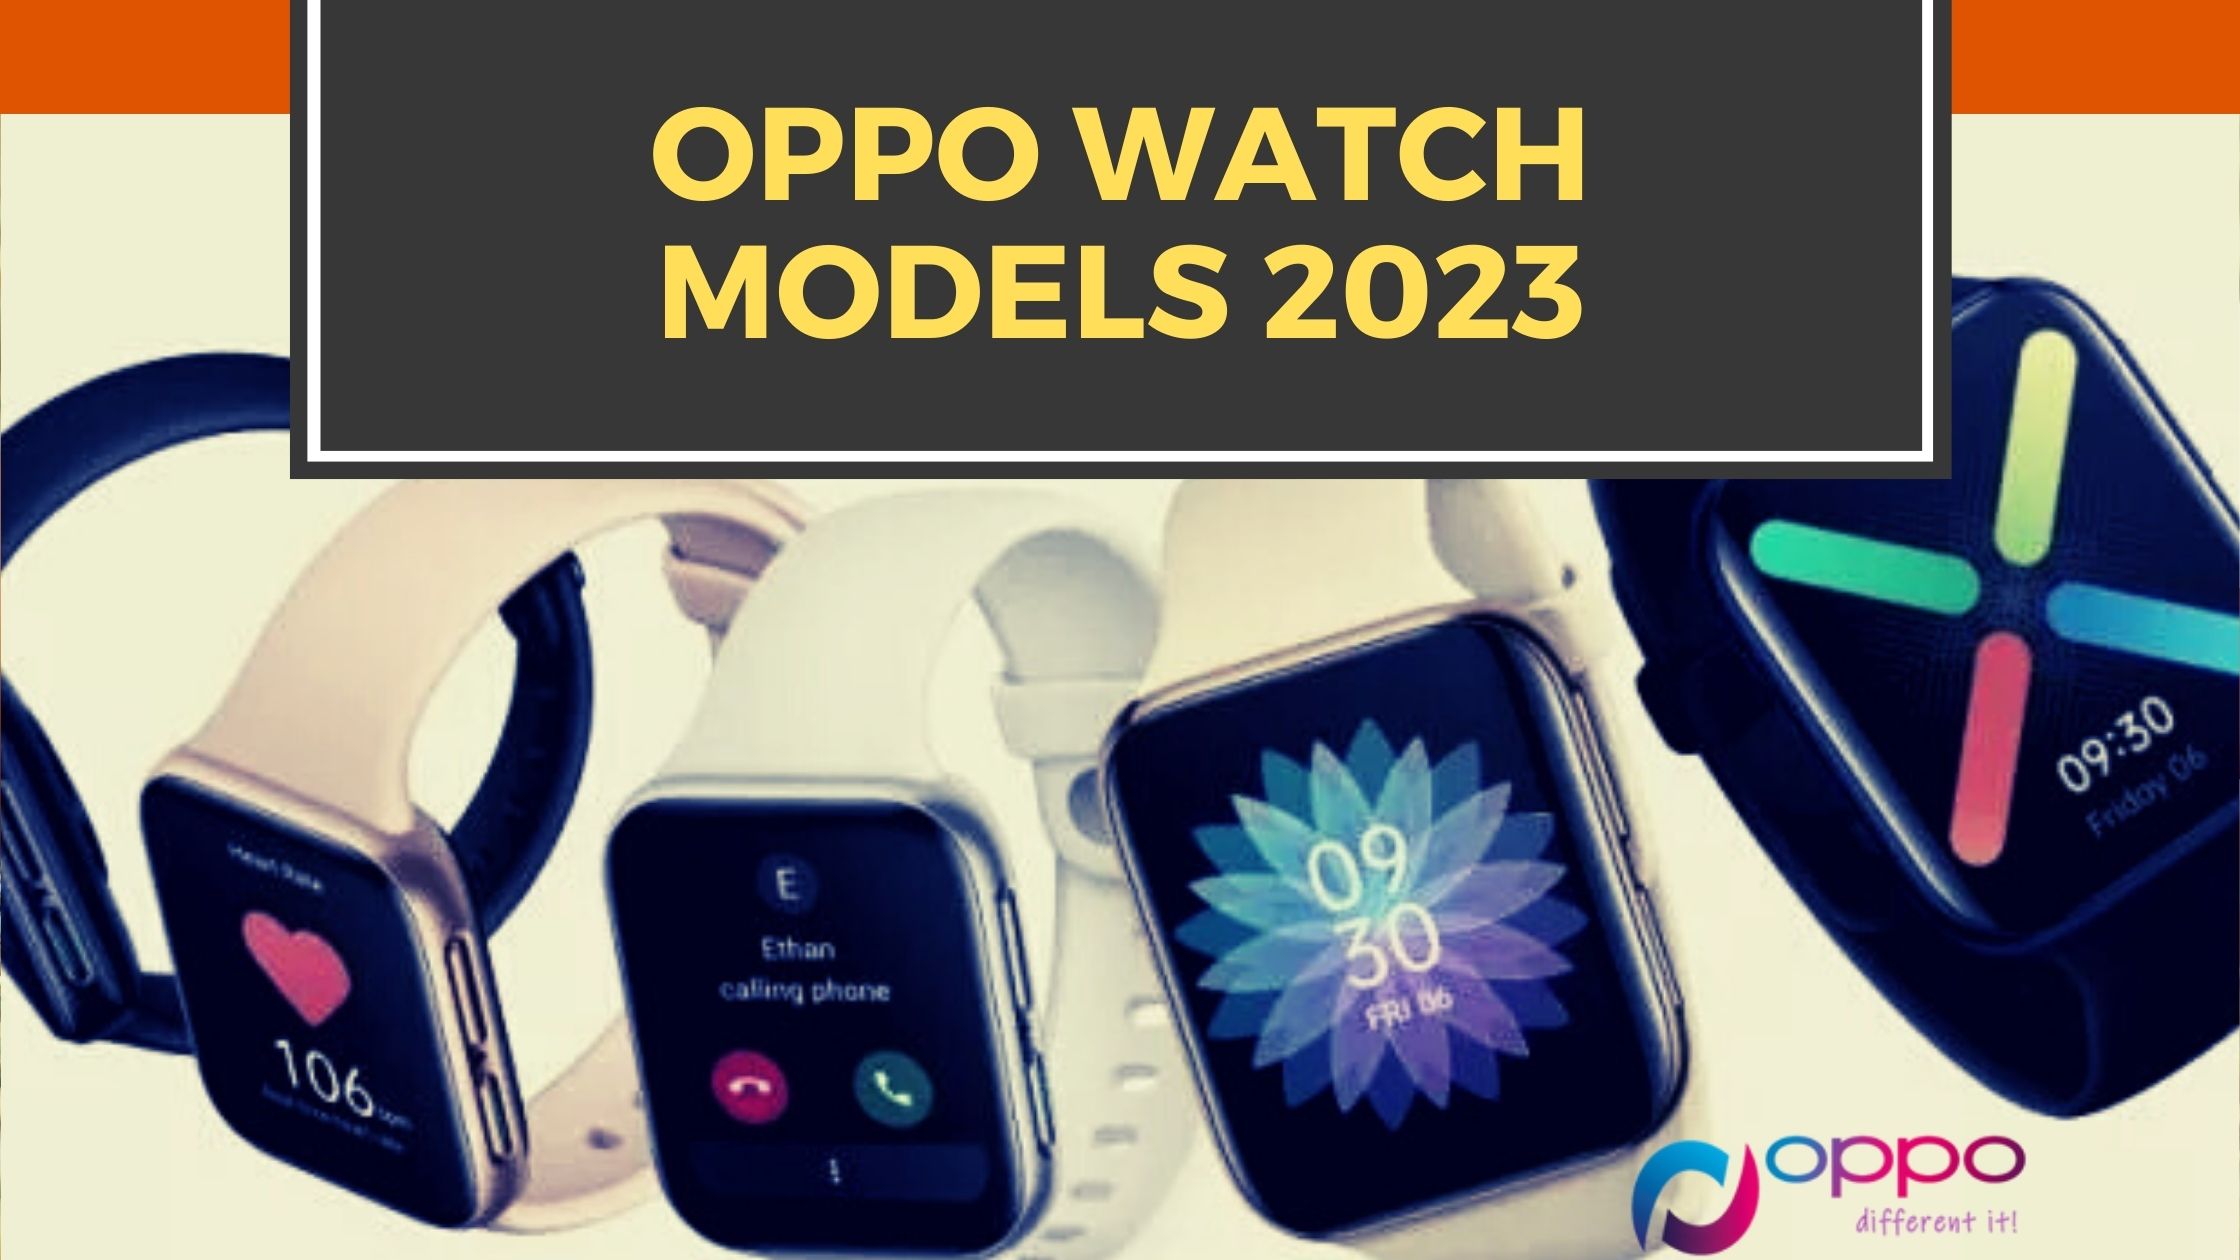 Oppo Watch Models 2023